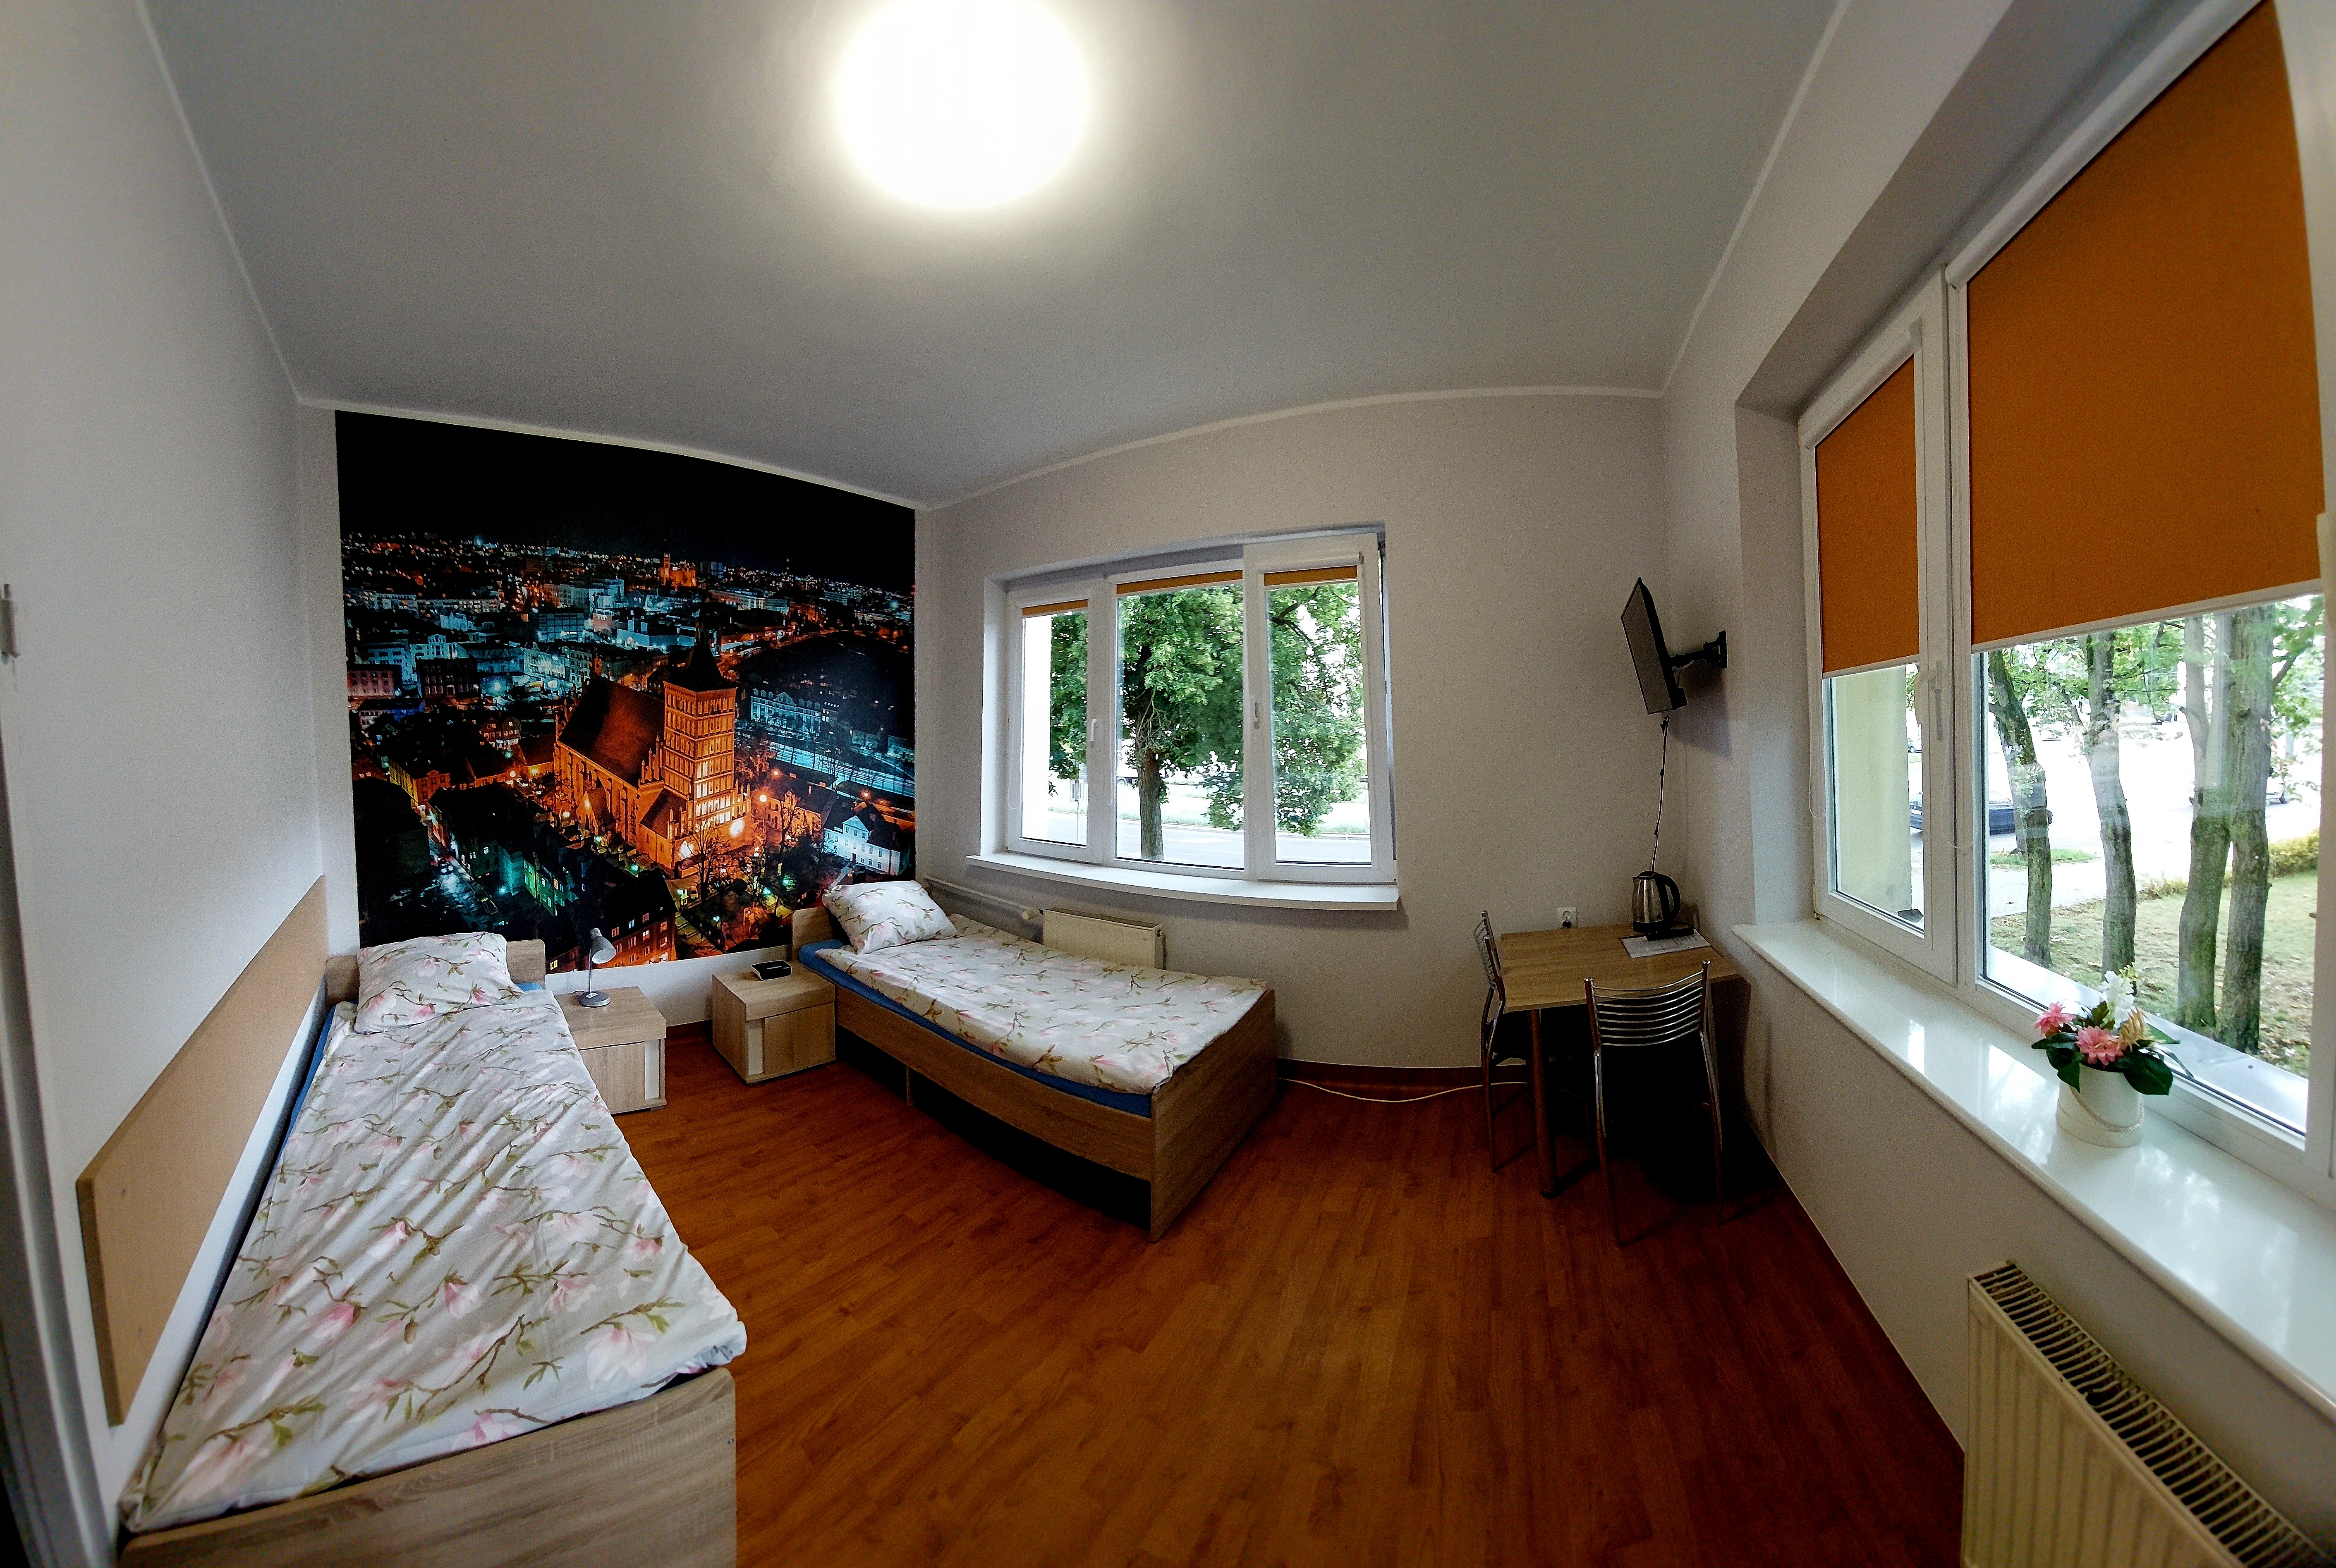 Ein Zweibettzimmer mit Bad im Objekt Nr. 1 Kosciuszko. Tapete im Hintergrund an der Wand, die Olsztyn aus der Vogelperspektive zeigt.  